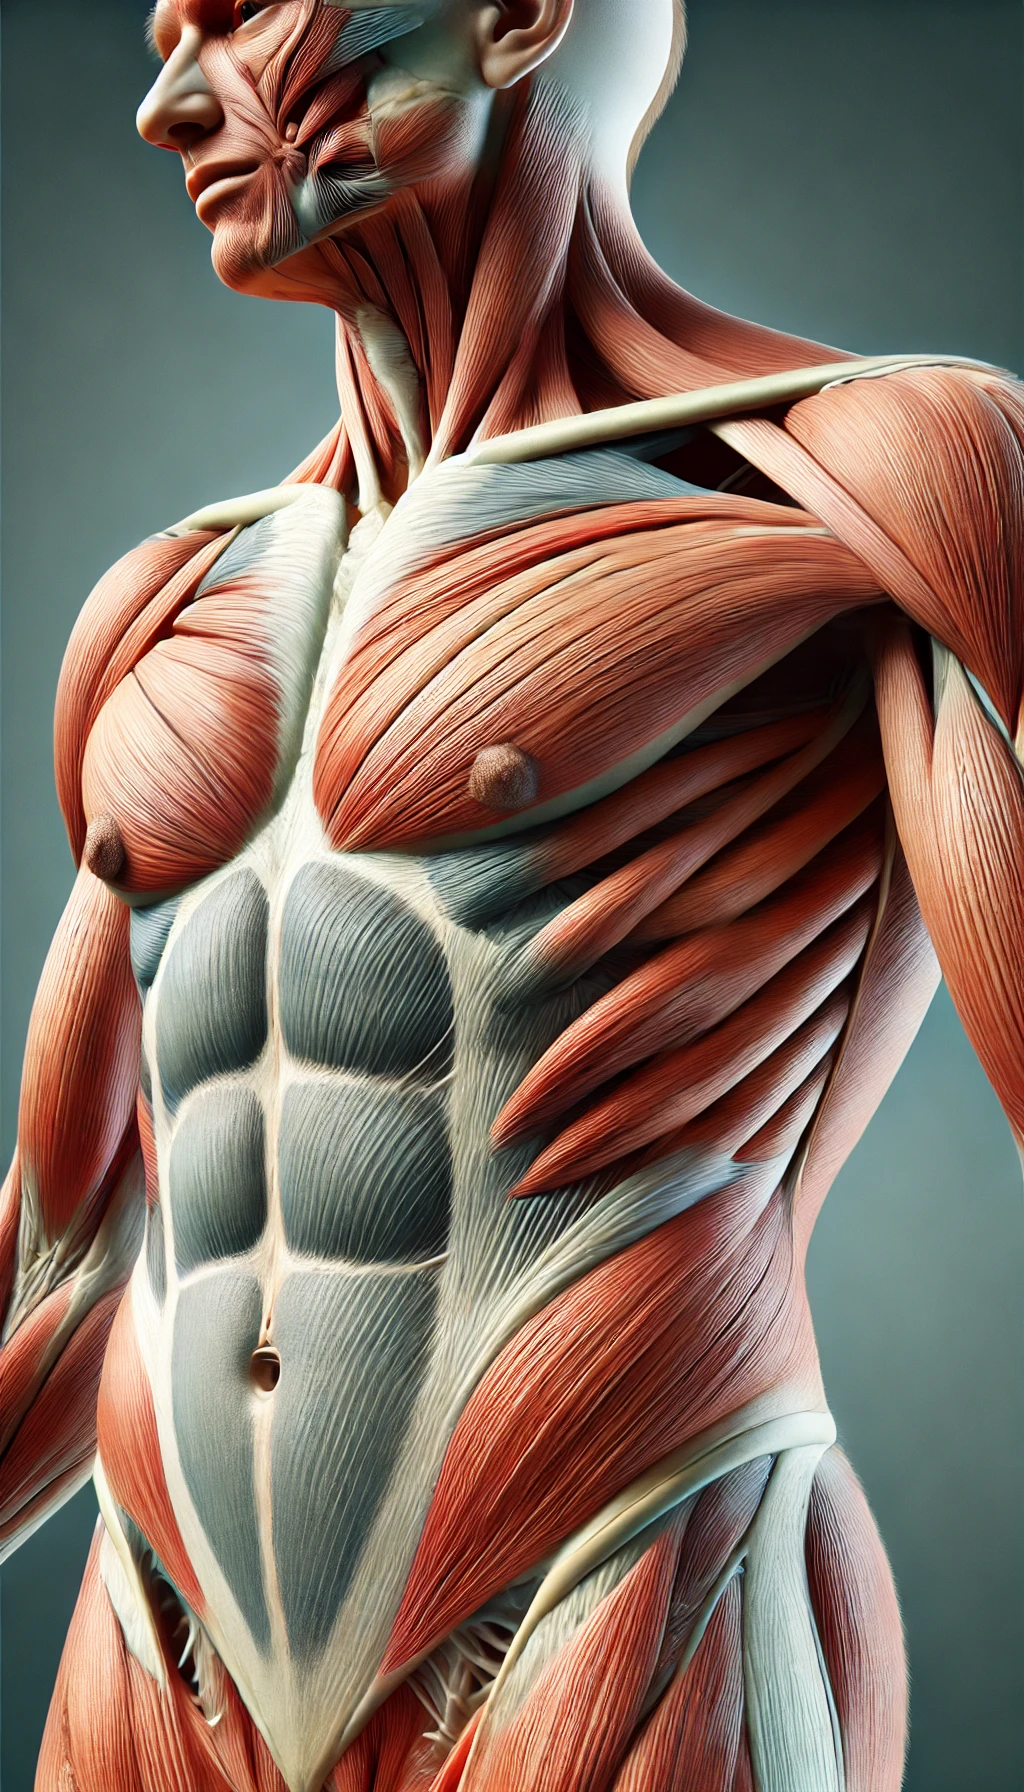 Tout Savoir sur les Muscles Abdominaux Antérolatéraux Structure, Fonction et Exercices Essentiels